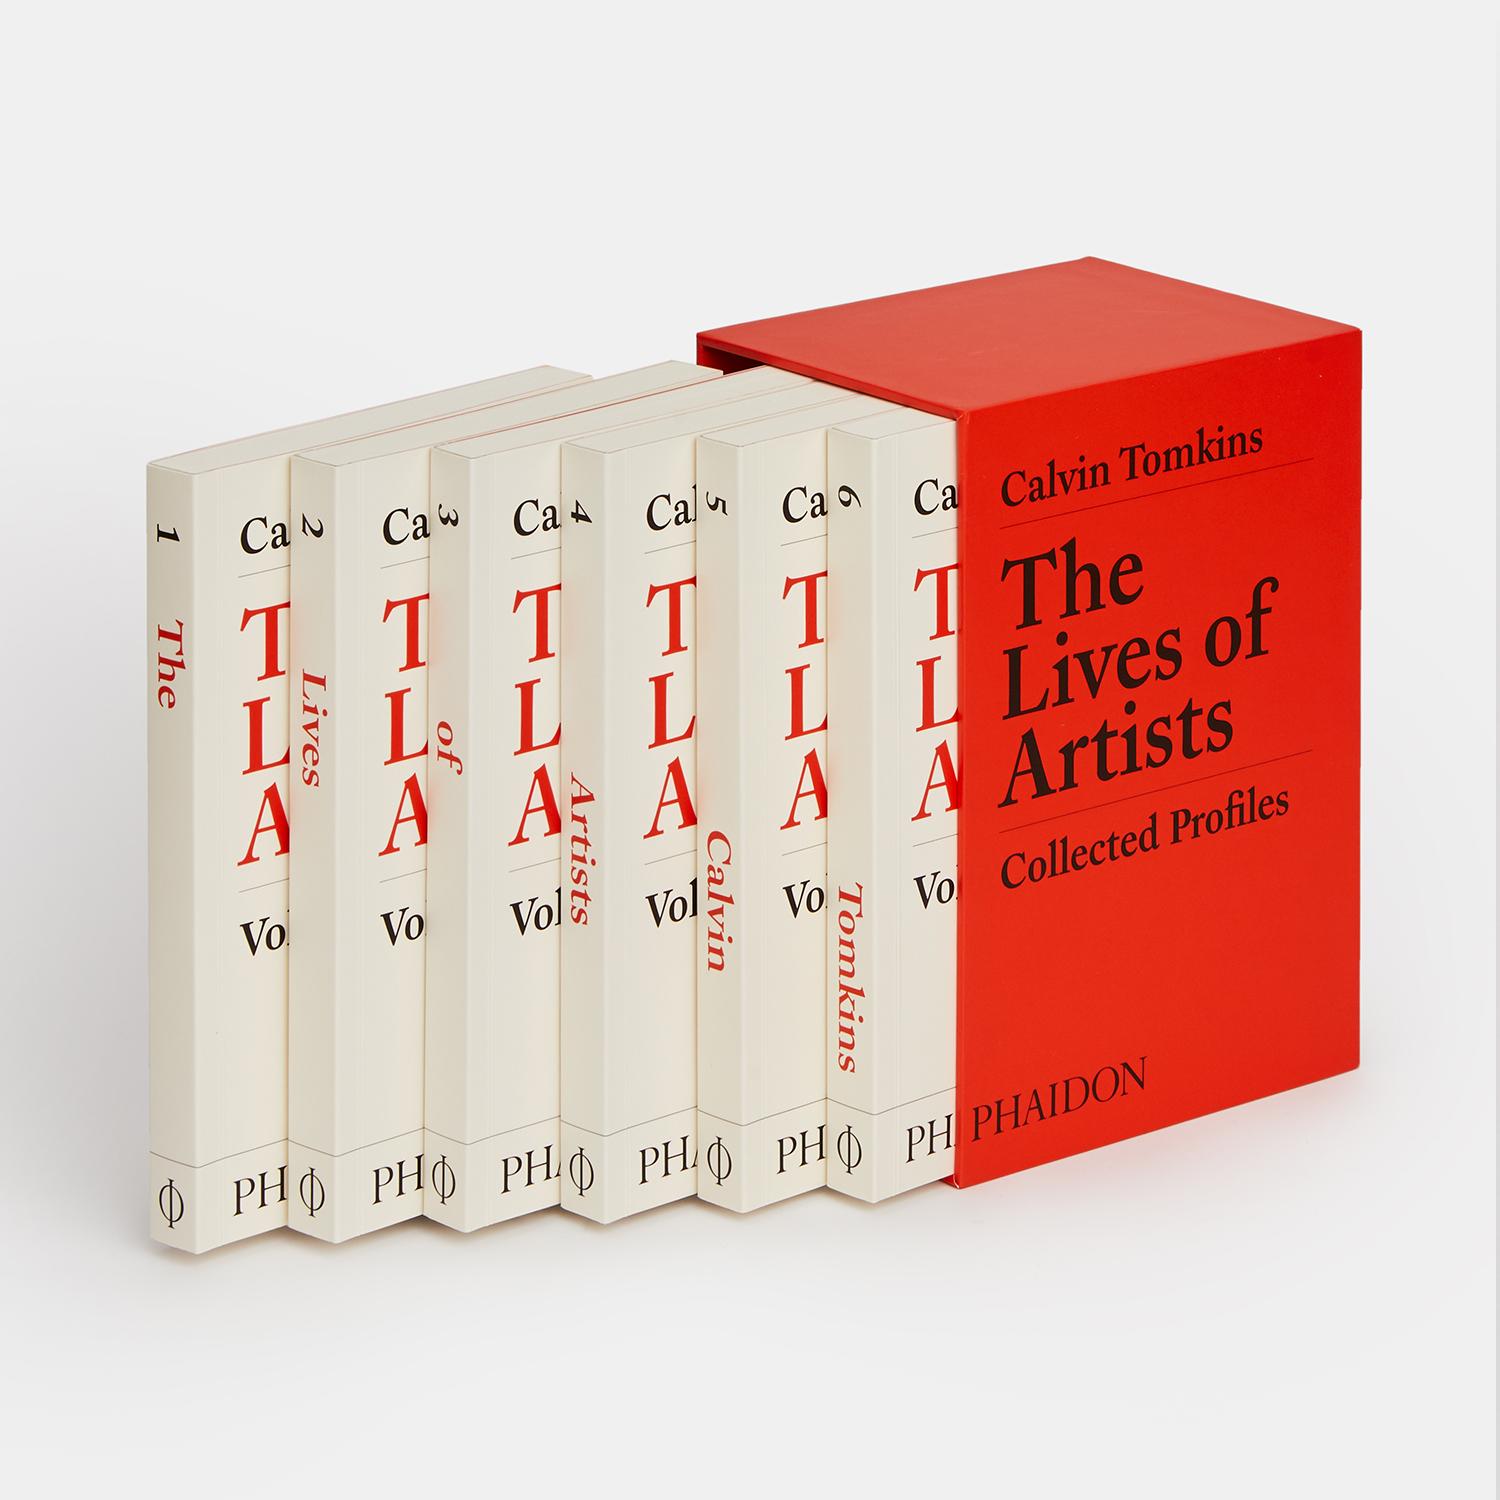 Die ultimative Sammlung von Künstlerprofilen des legendären Journalisten und New Yorker-Autors Calvin Tomkins, von den 1960er Jahren bis heute

1959 interviewte Calvin Tomkins Marcel Duchamp für Newsweek und begann damit seine sechs Jahrzehnte